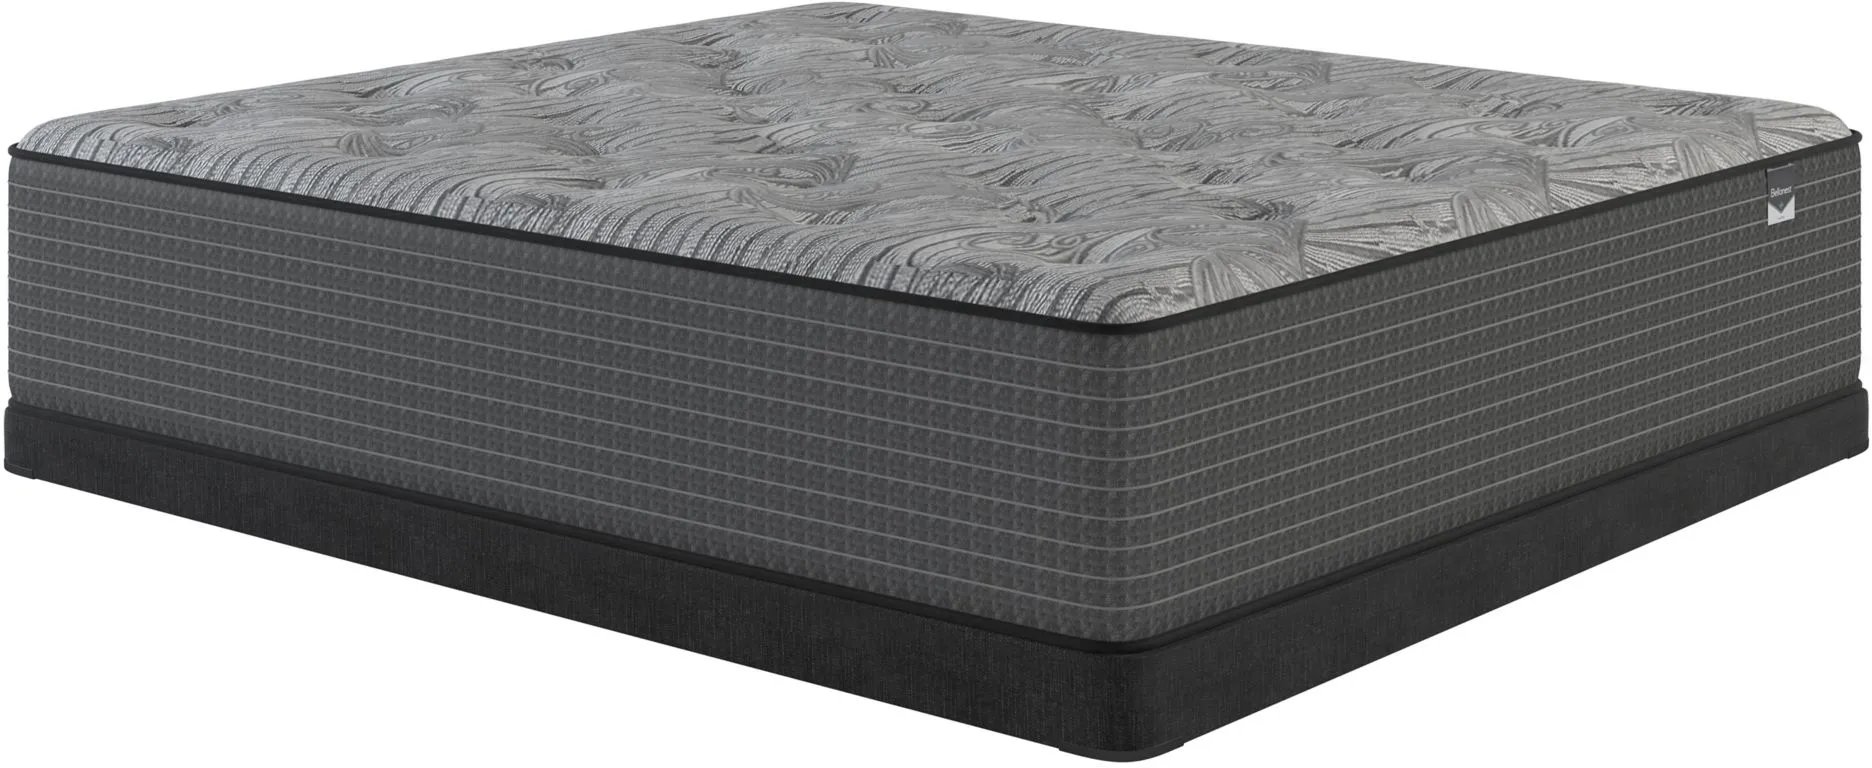 bellanest dahlia mattress reviews